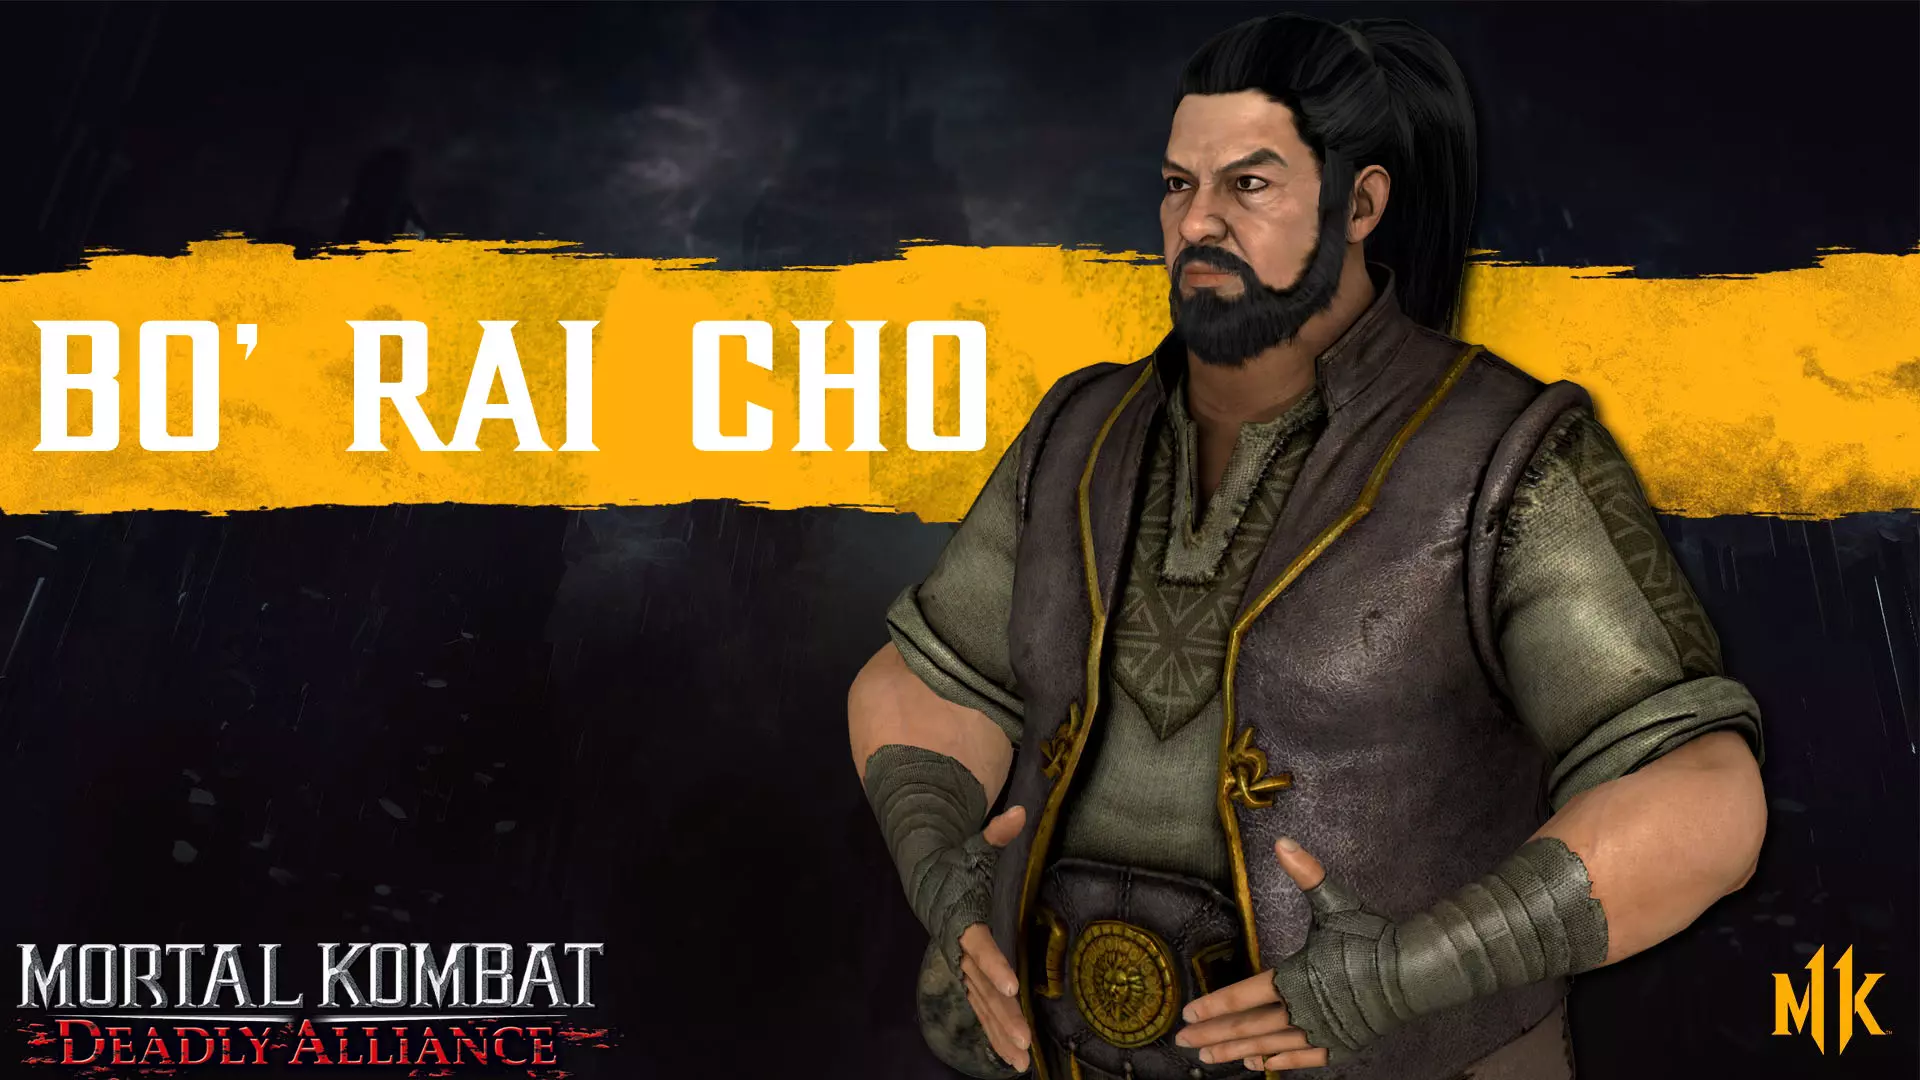 کاور شخصیت بو رای چو در مجموعه Mortal Kombat